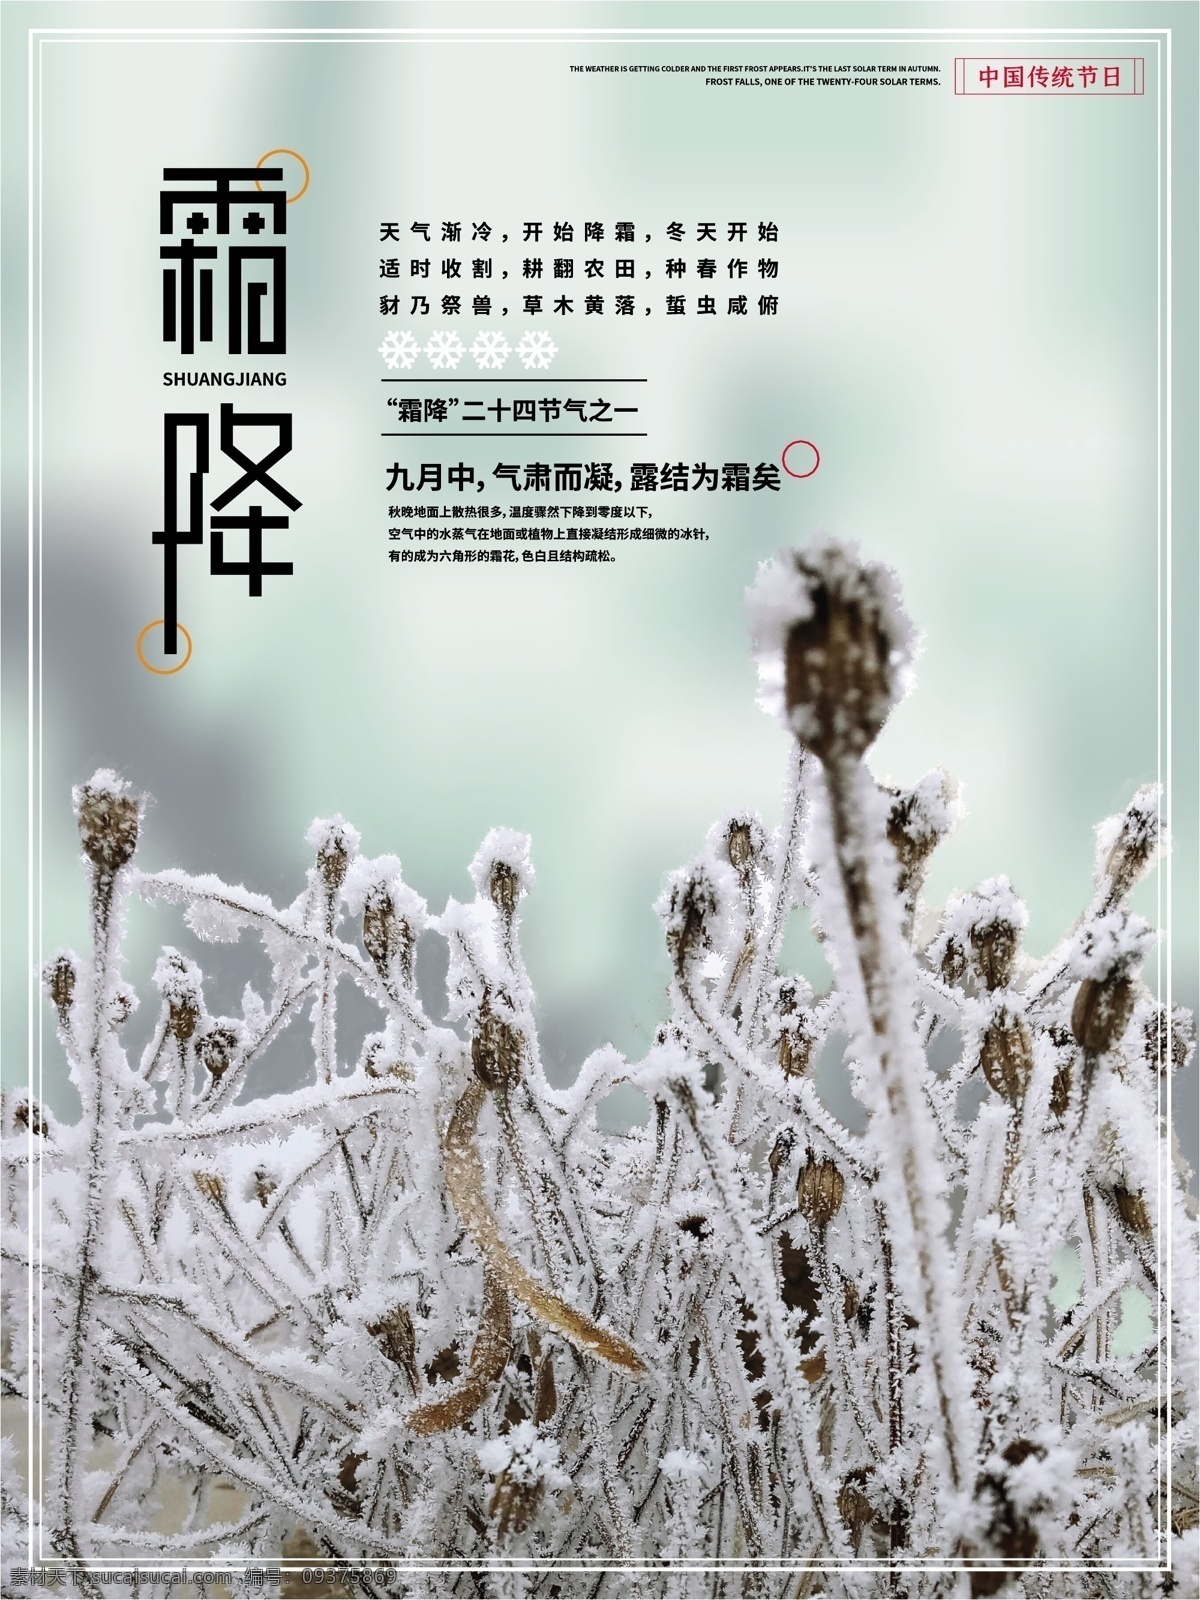 霜降 节气 图 创意 海报 冬天来了 寒冷 天气变冷 节日海报 公益海报 24节气 中国传统节日 传统文化